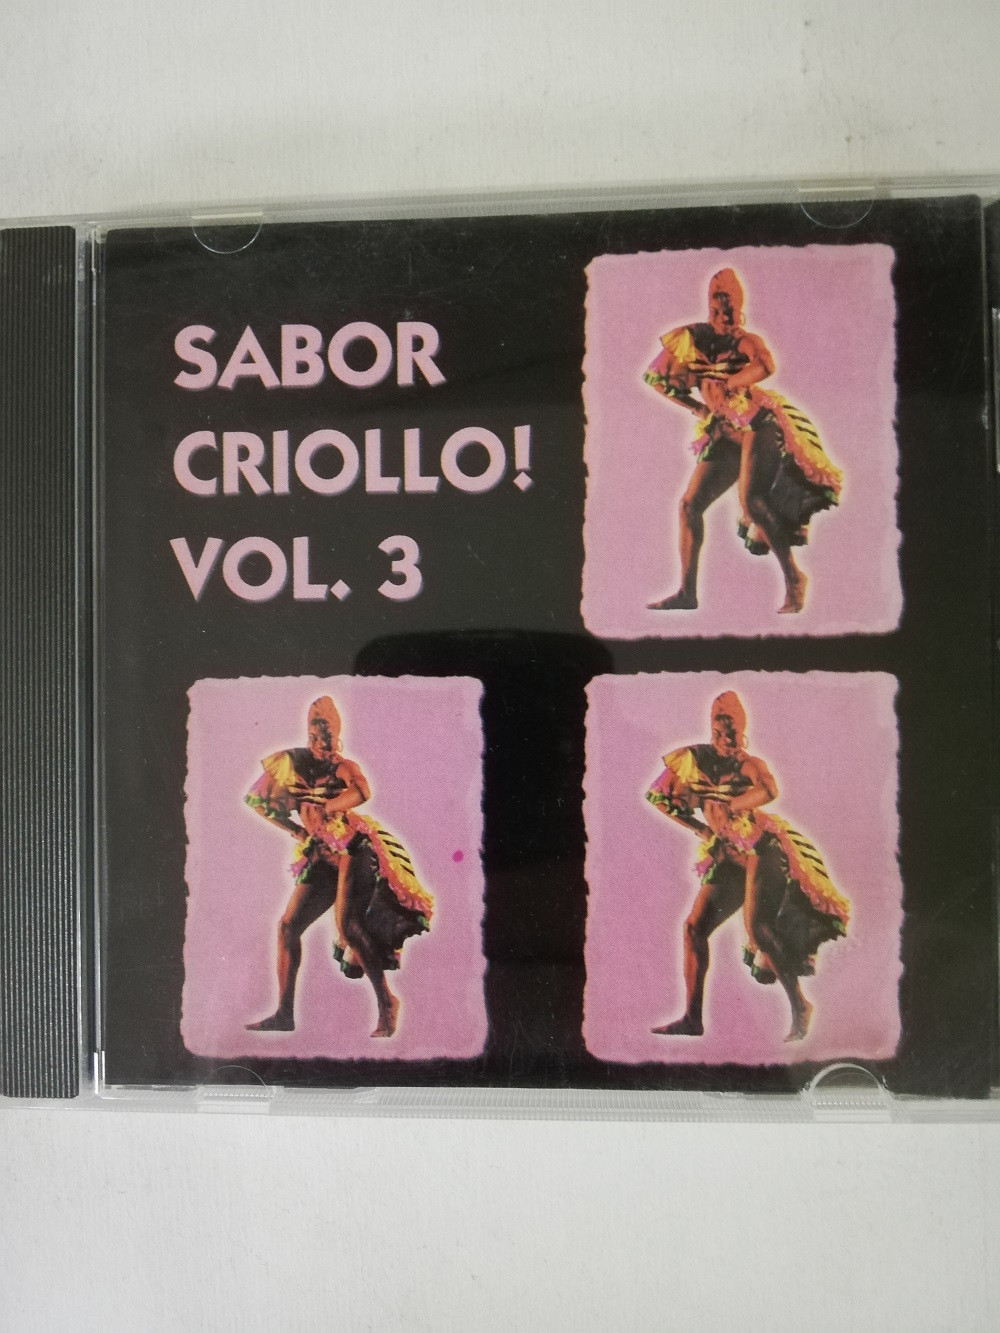 Imagen CD SABOR CRIOLLO! - SABOR CRIOLLO! VOL. 3